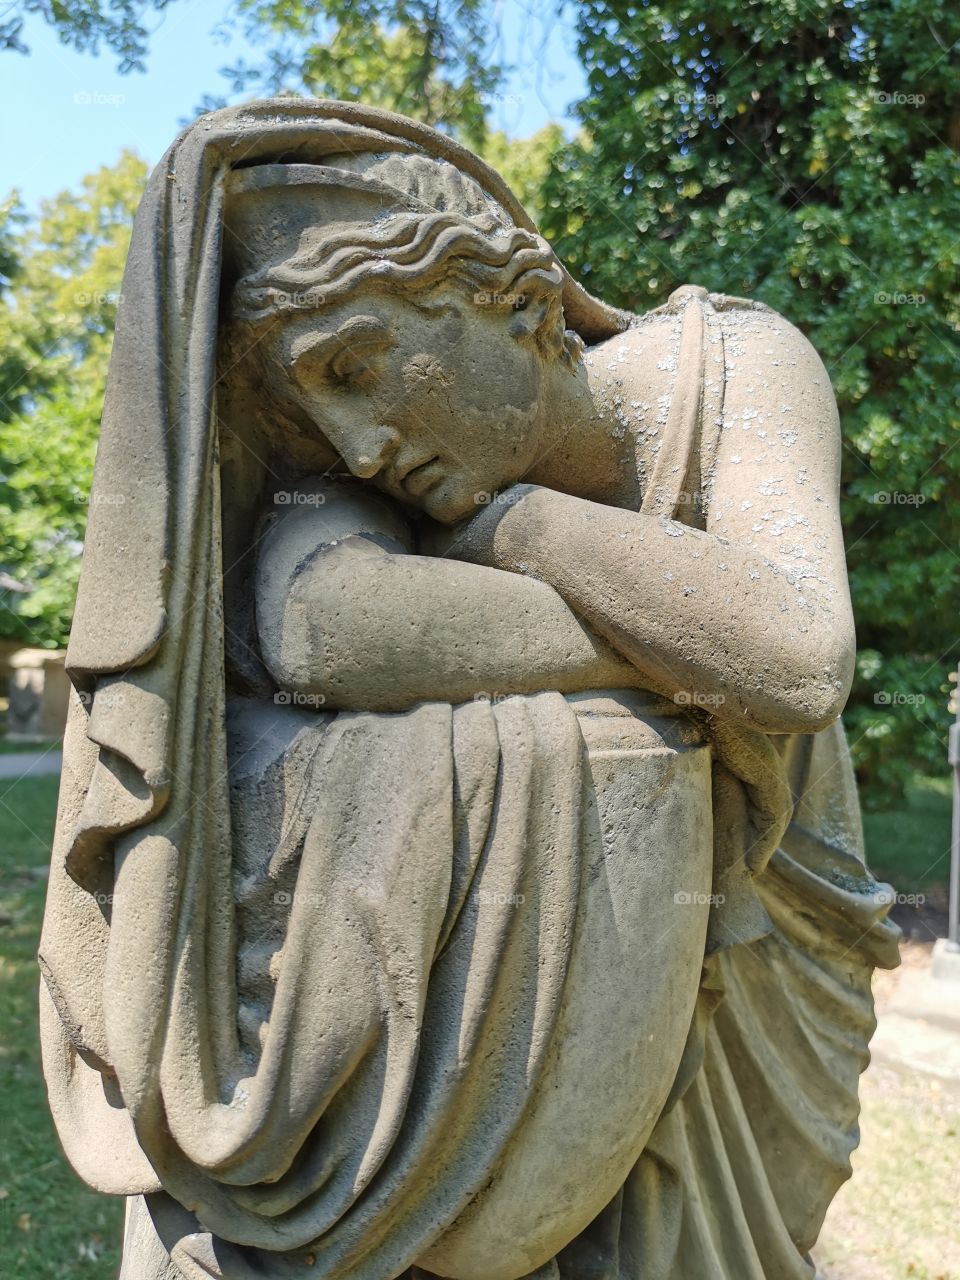 Jahrhunderte alter Grabstein auf dem ältesten Friedhof Stuttgarts